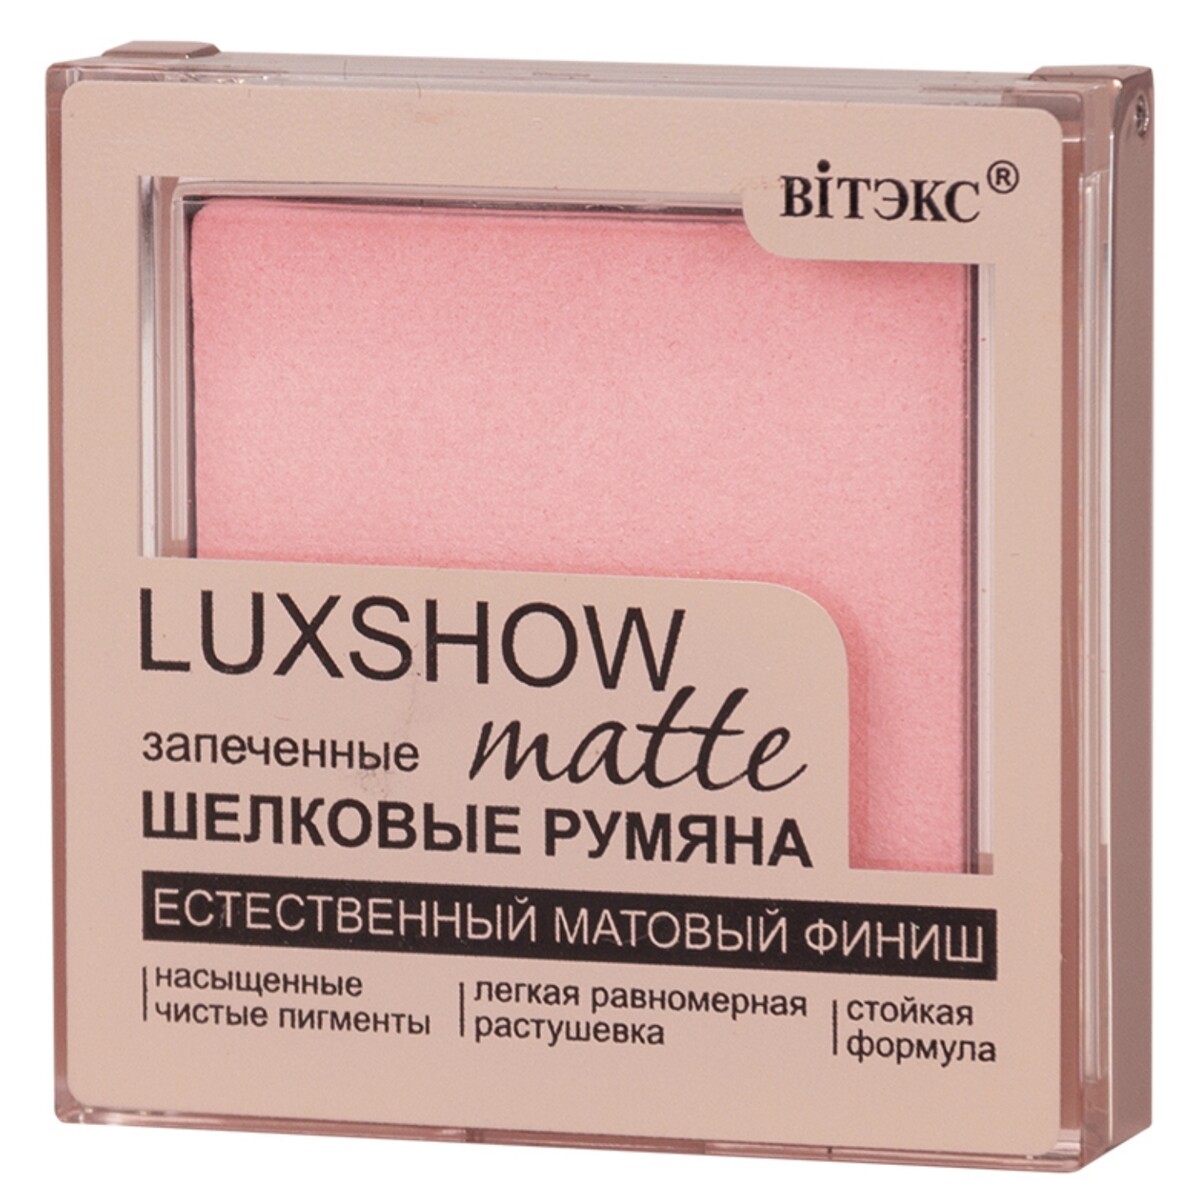 Vitex румяна матовые запеченные luxshow, тон 01, светло-розовый 4,5 г Витекс 011413187 - фото 1